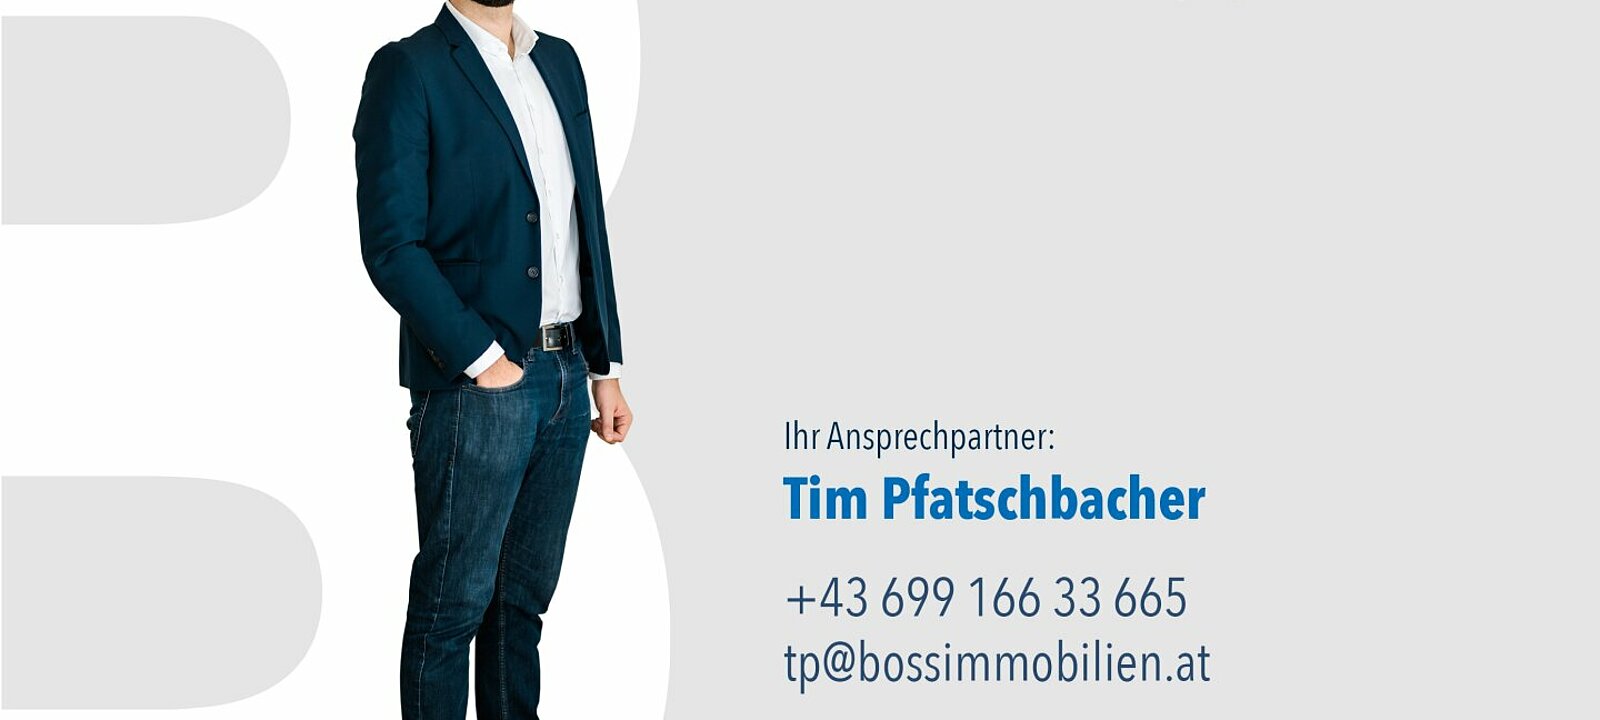 Tim Pfatschbacher, 0699 166 33 665